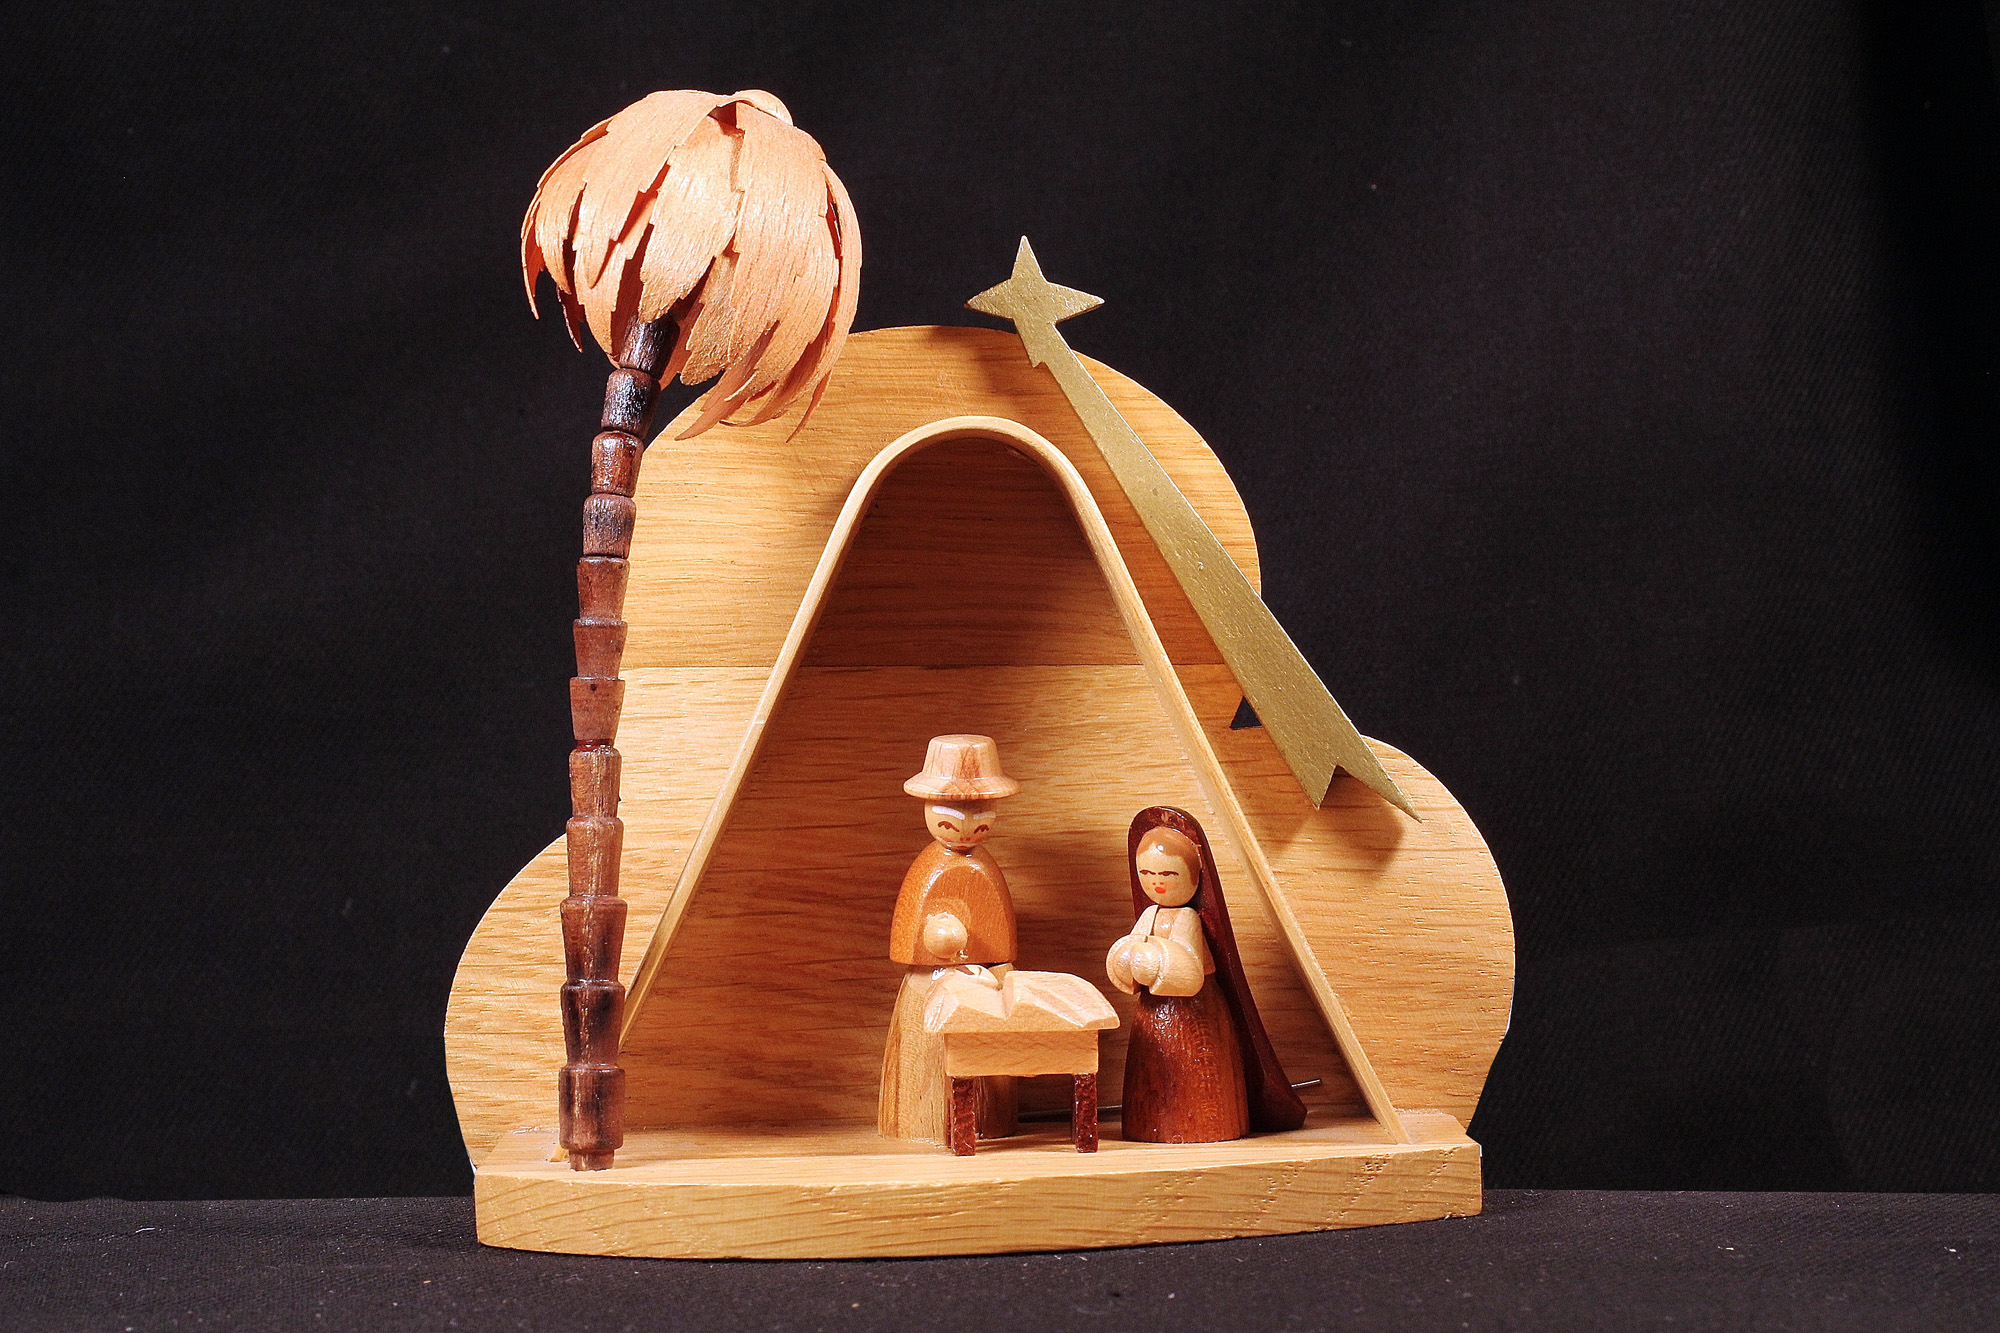 Erzgebirgische Weihnachtskrippe mit Stall, Heiliger Familie, Stern und Palme aus Holz